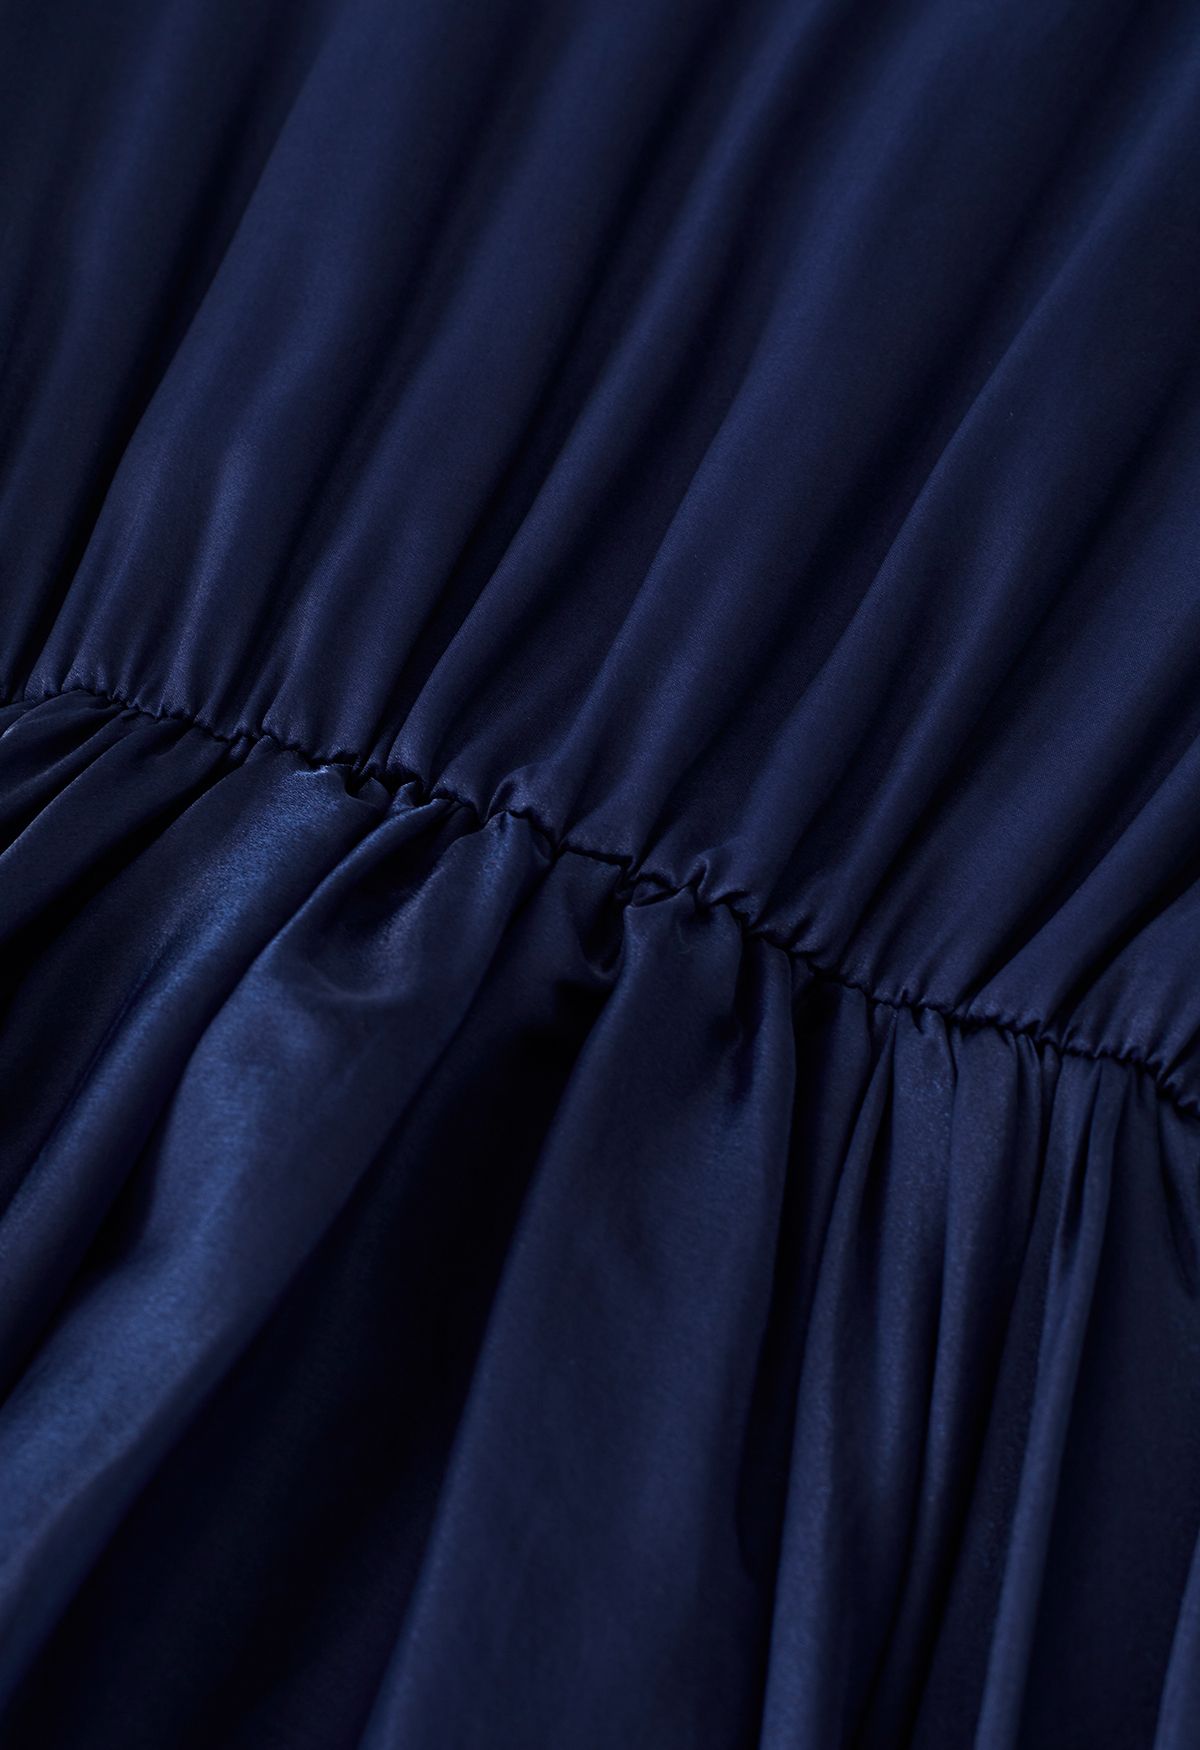 Precioso vestido con volantes de malla transparente con cuello de lazo en azul marino